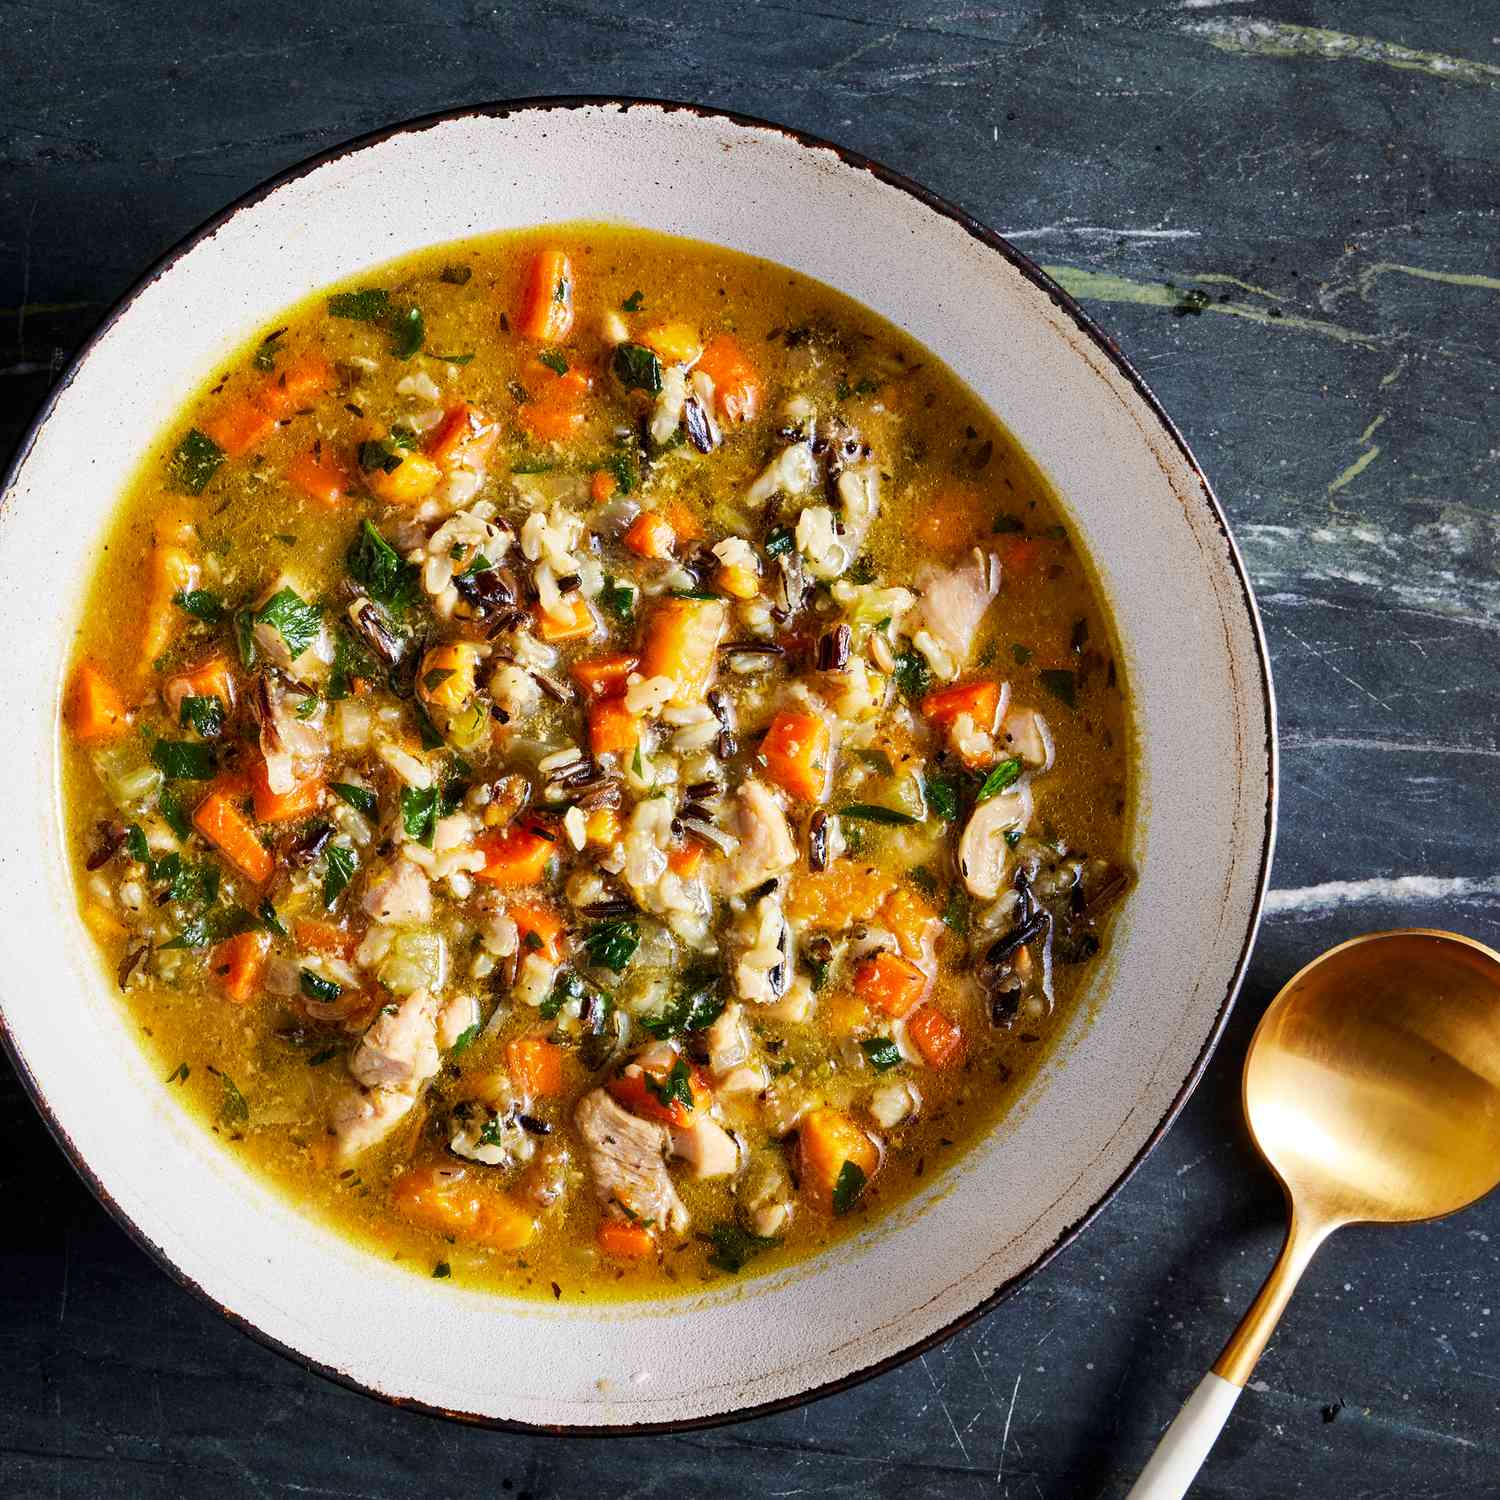 Foto de la receta de sopa de pollo y tubérculos con arroz salvaje.